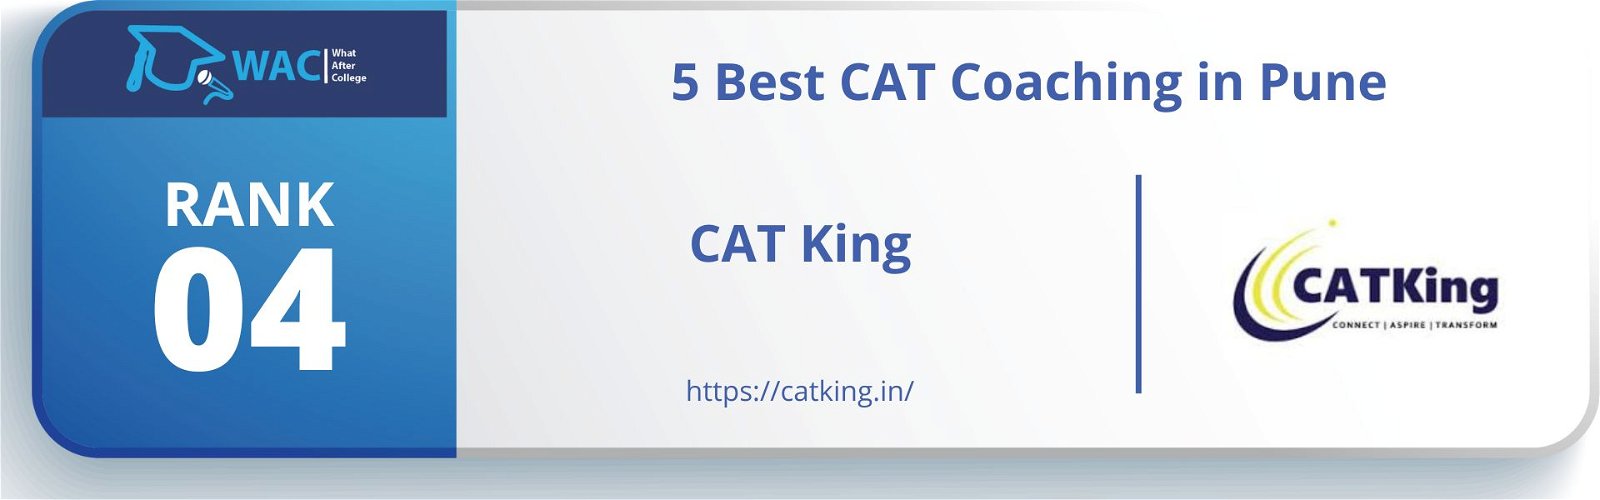 cat coaching in pune